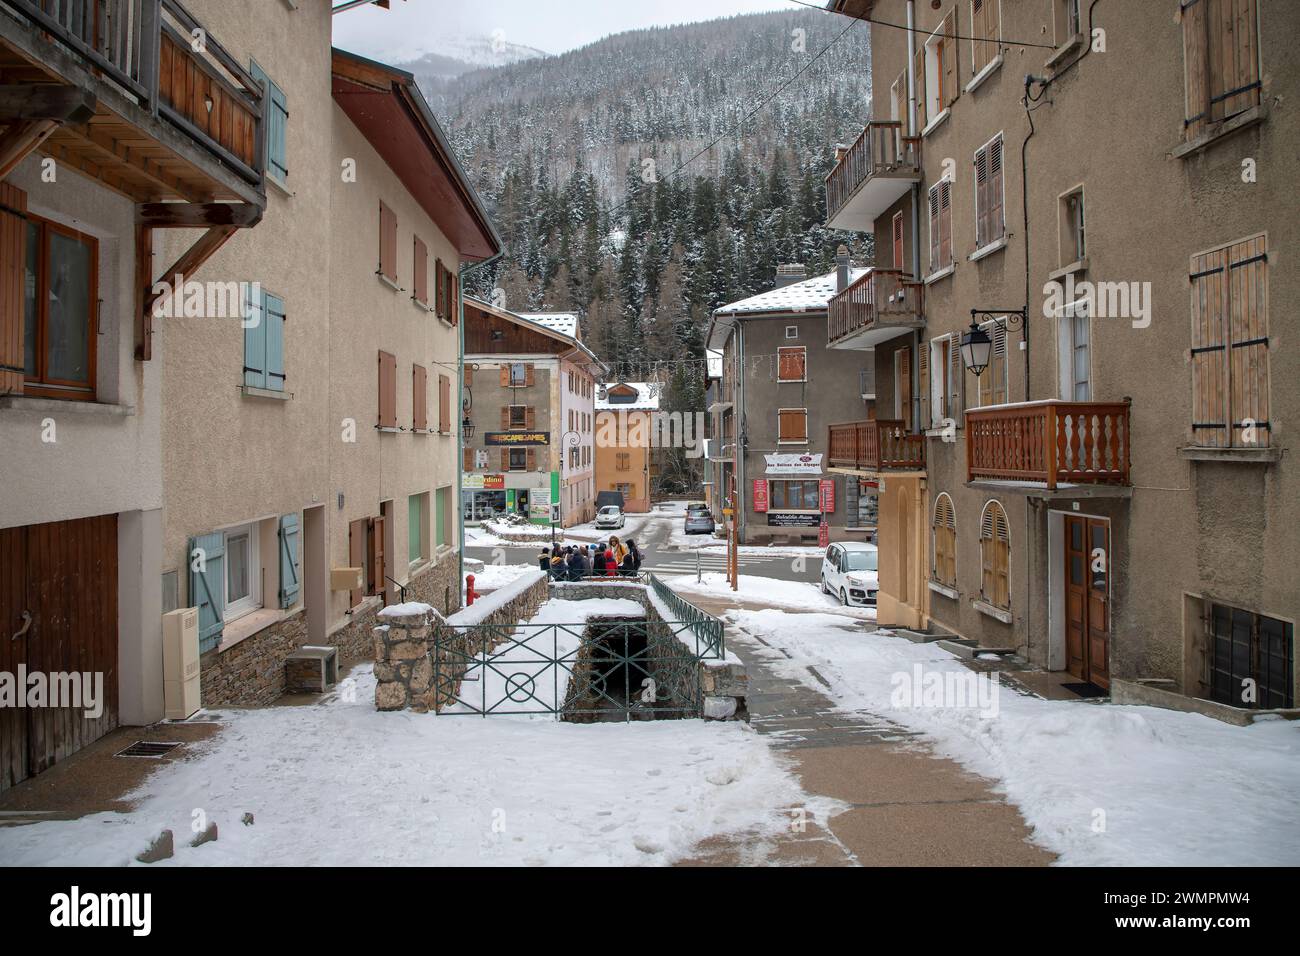 Eine Straße von Lanslebourg, einer kleinen, malerischen Stadt in den französischen Alpen Stockfoto